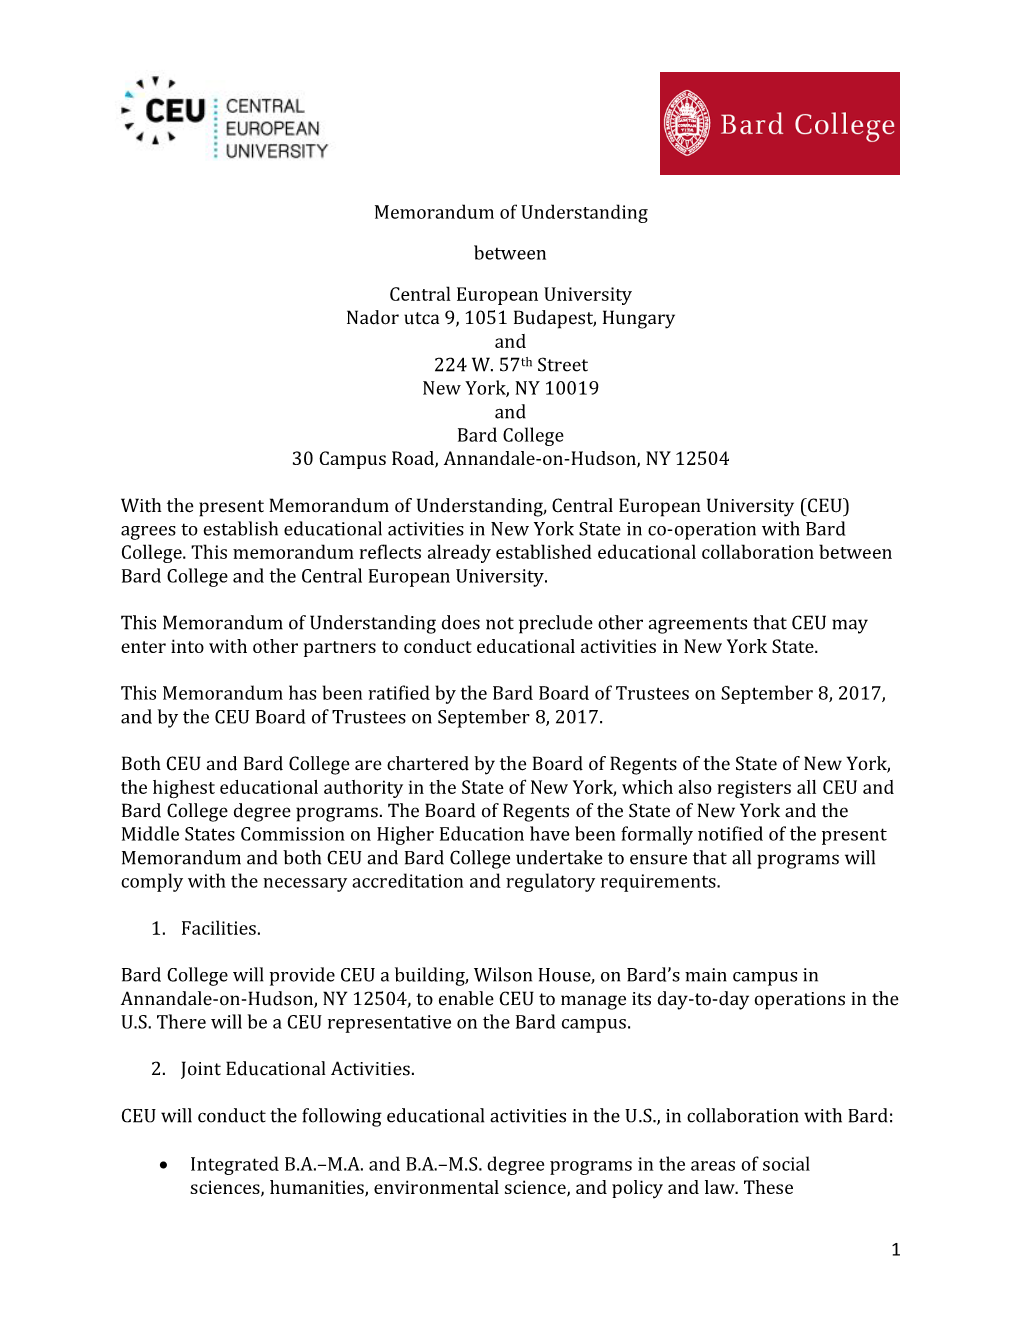 CEU-Bard College Agreement